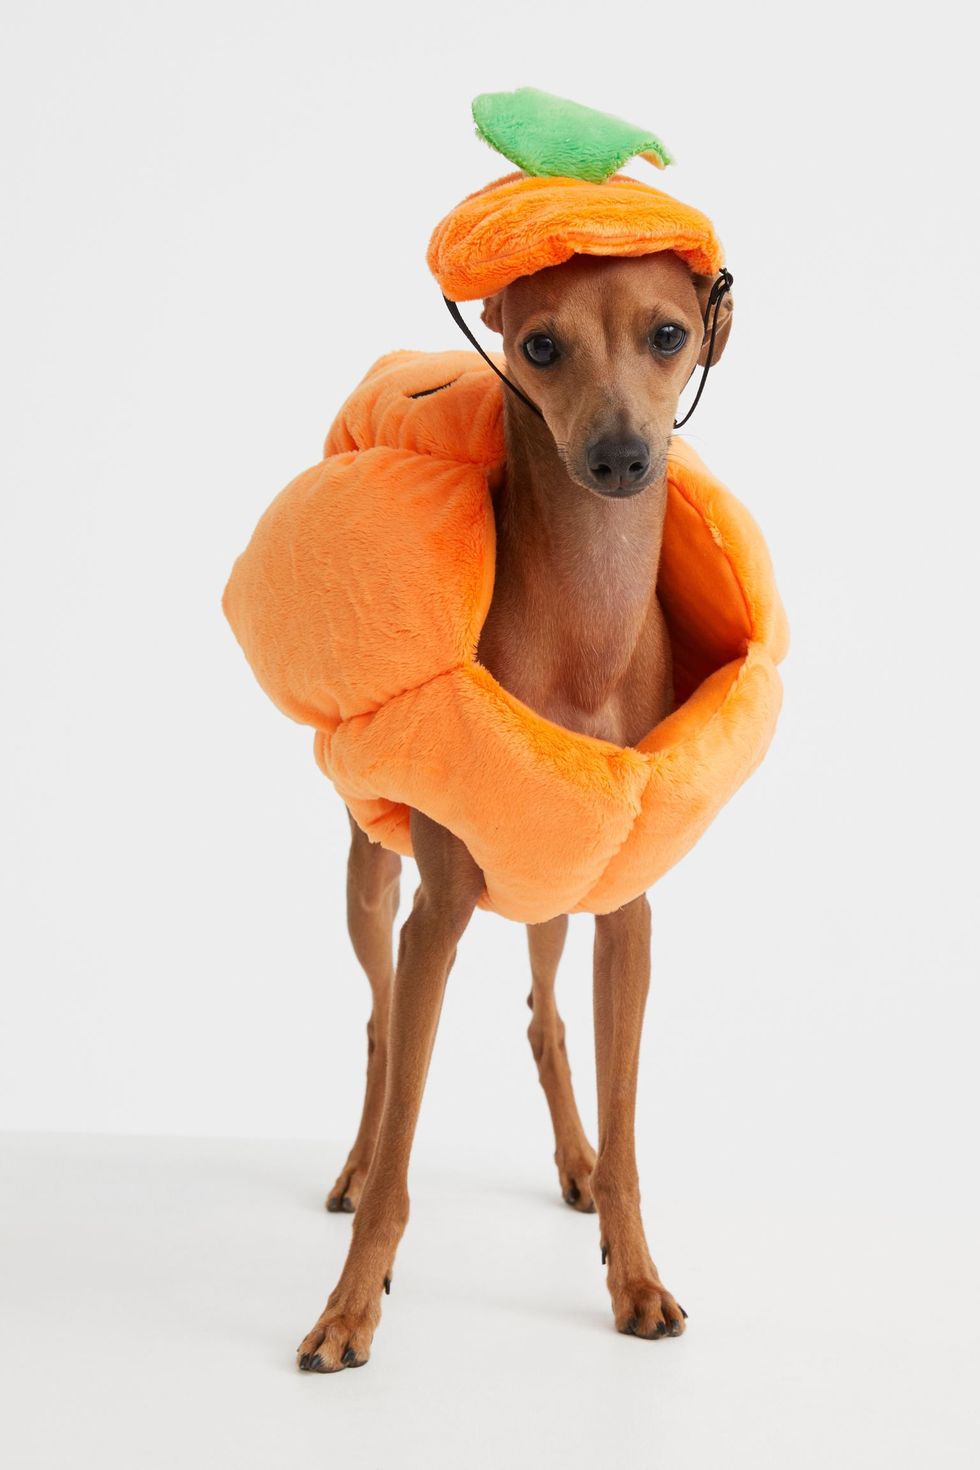 forum geroosterd brood Vernederen Bij de H&M scoor je het perfecte Halloween pakje voor je hond! |  GadgetGekkies